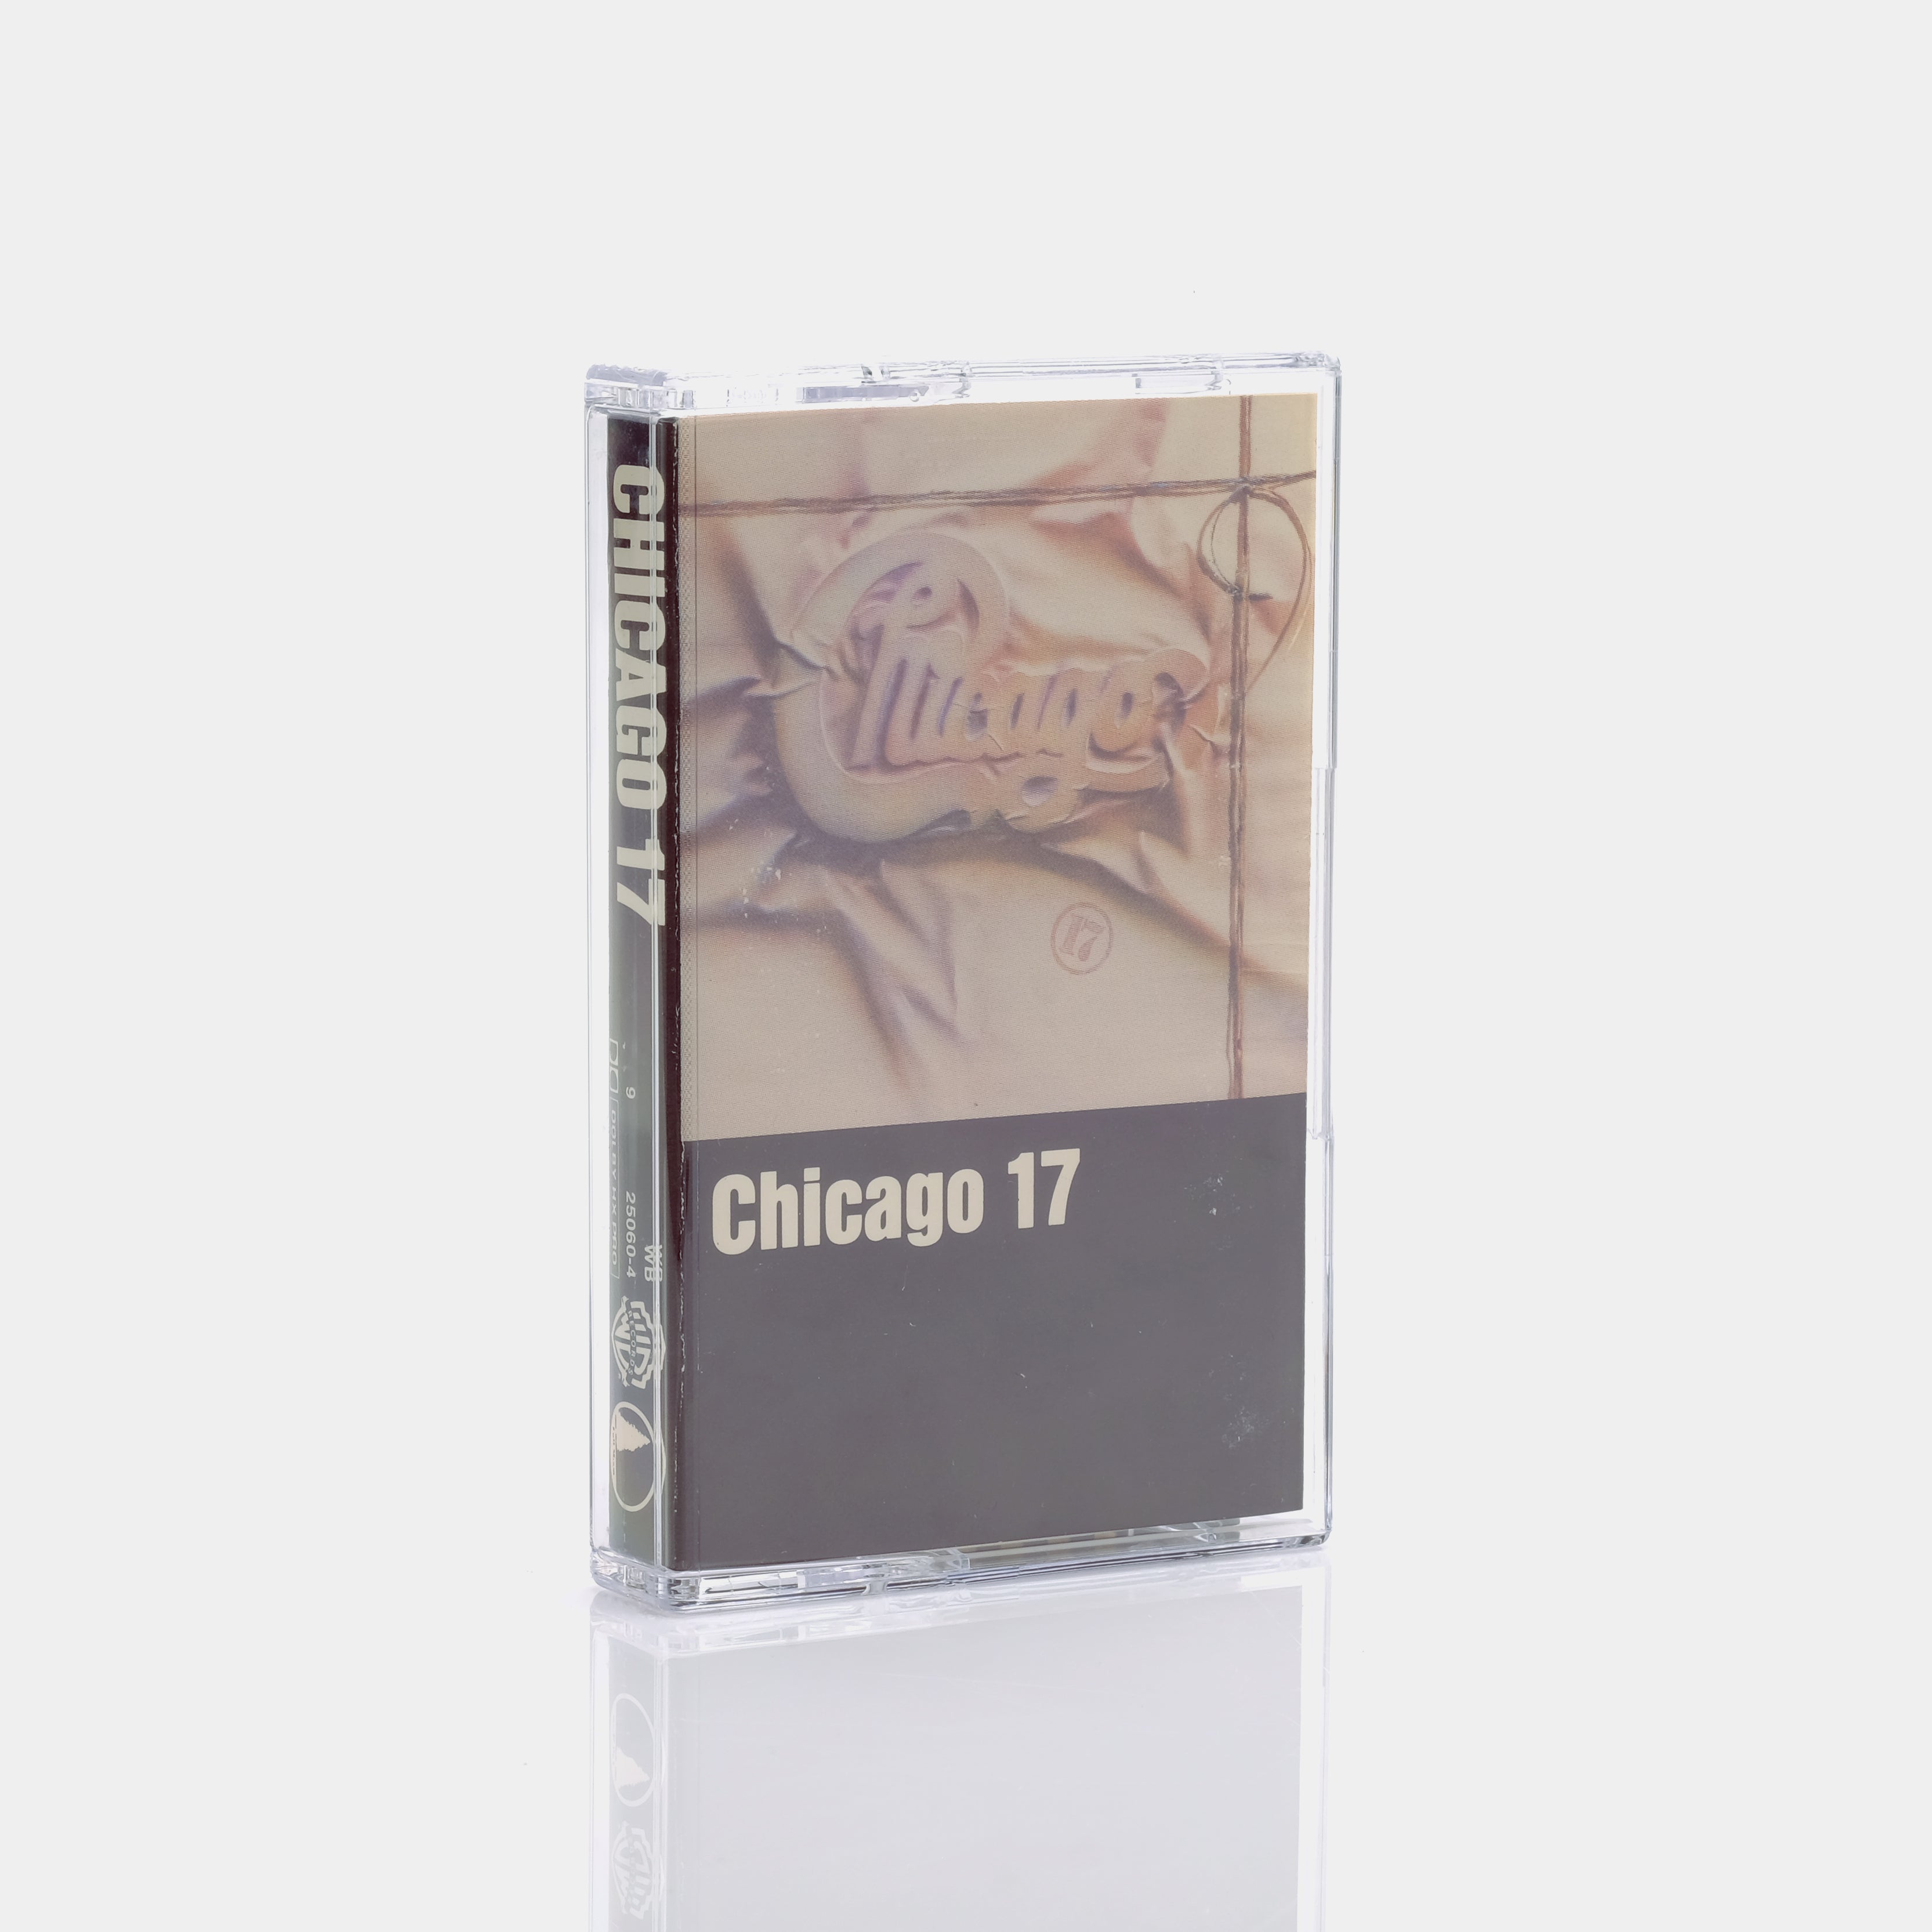 Chicago - Chicago 17 Cassette Tape